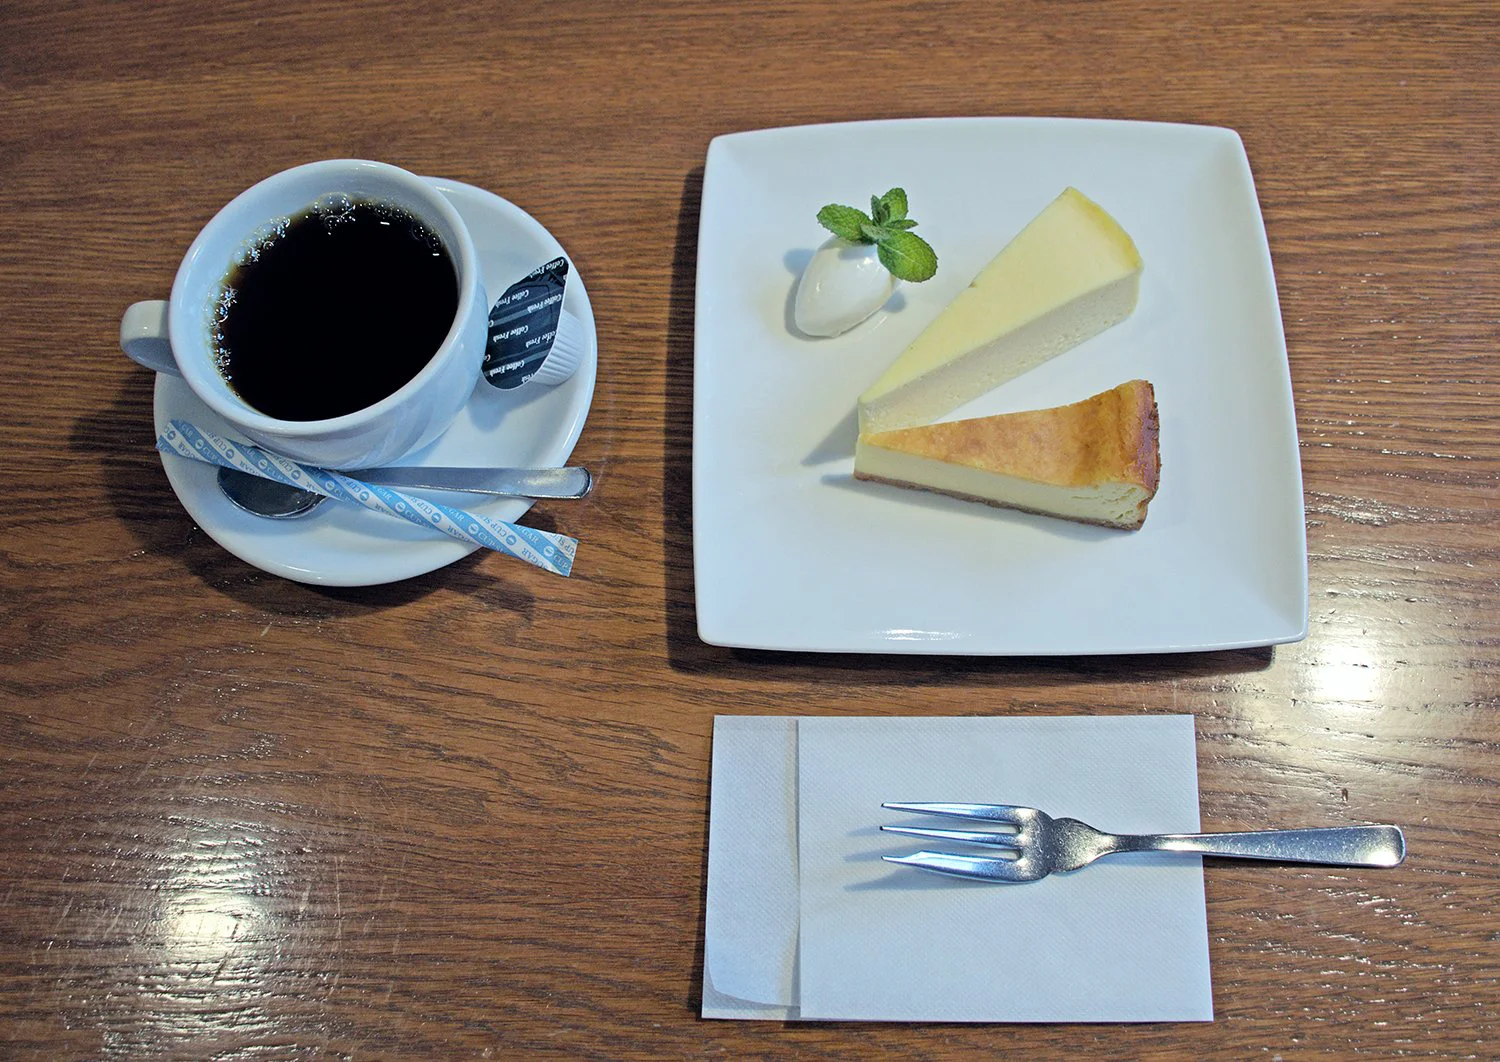 西船橋駅南口 Cue S Cafe で銀座名店のコーヒーと自家製2種盛りチーズケーキを楽しむ さんたつ By 散歩の達人